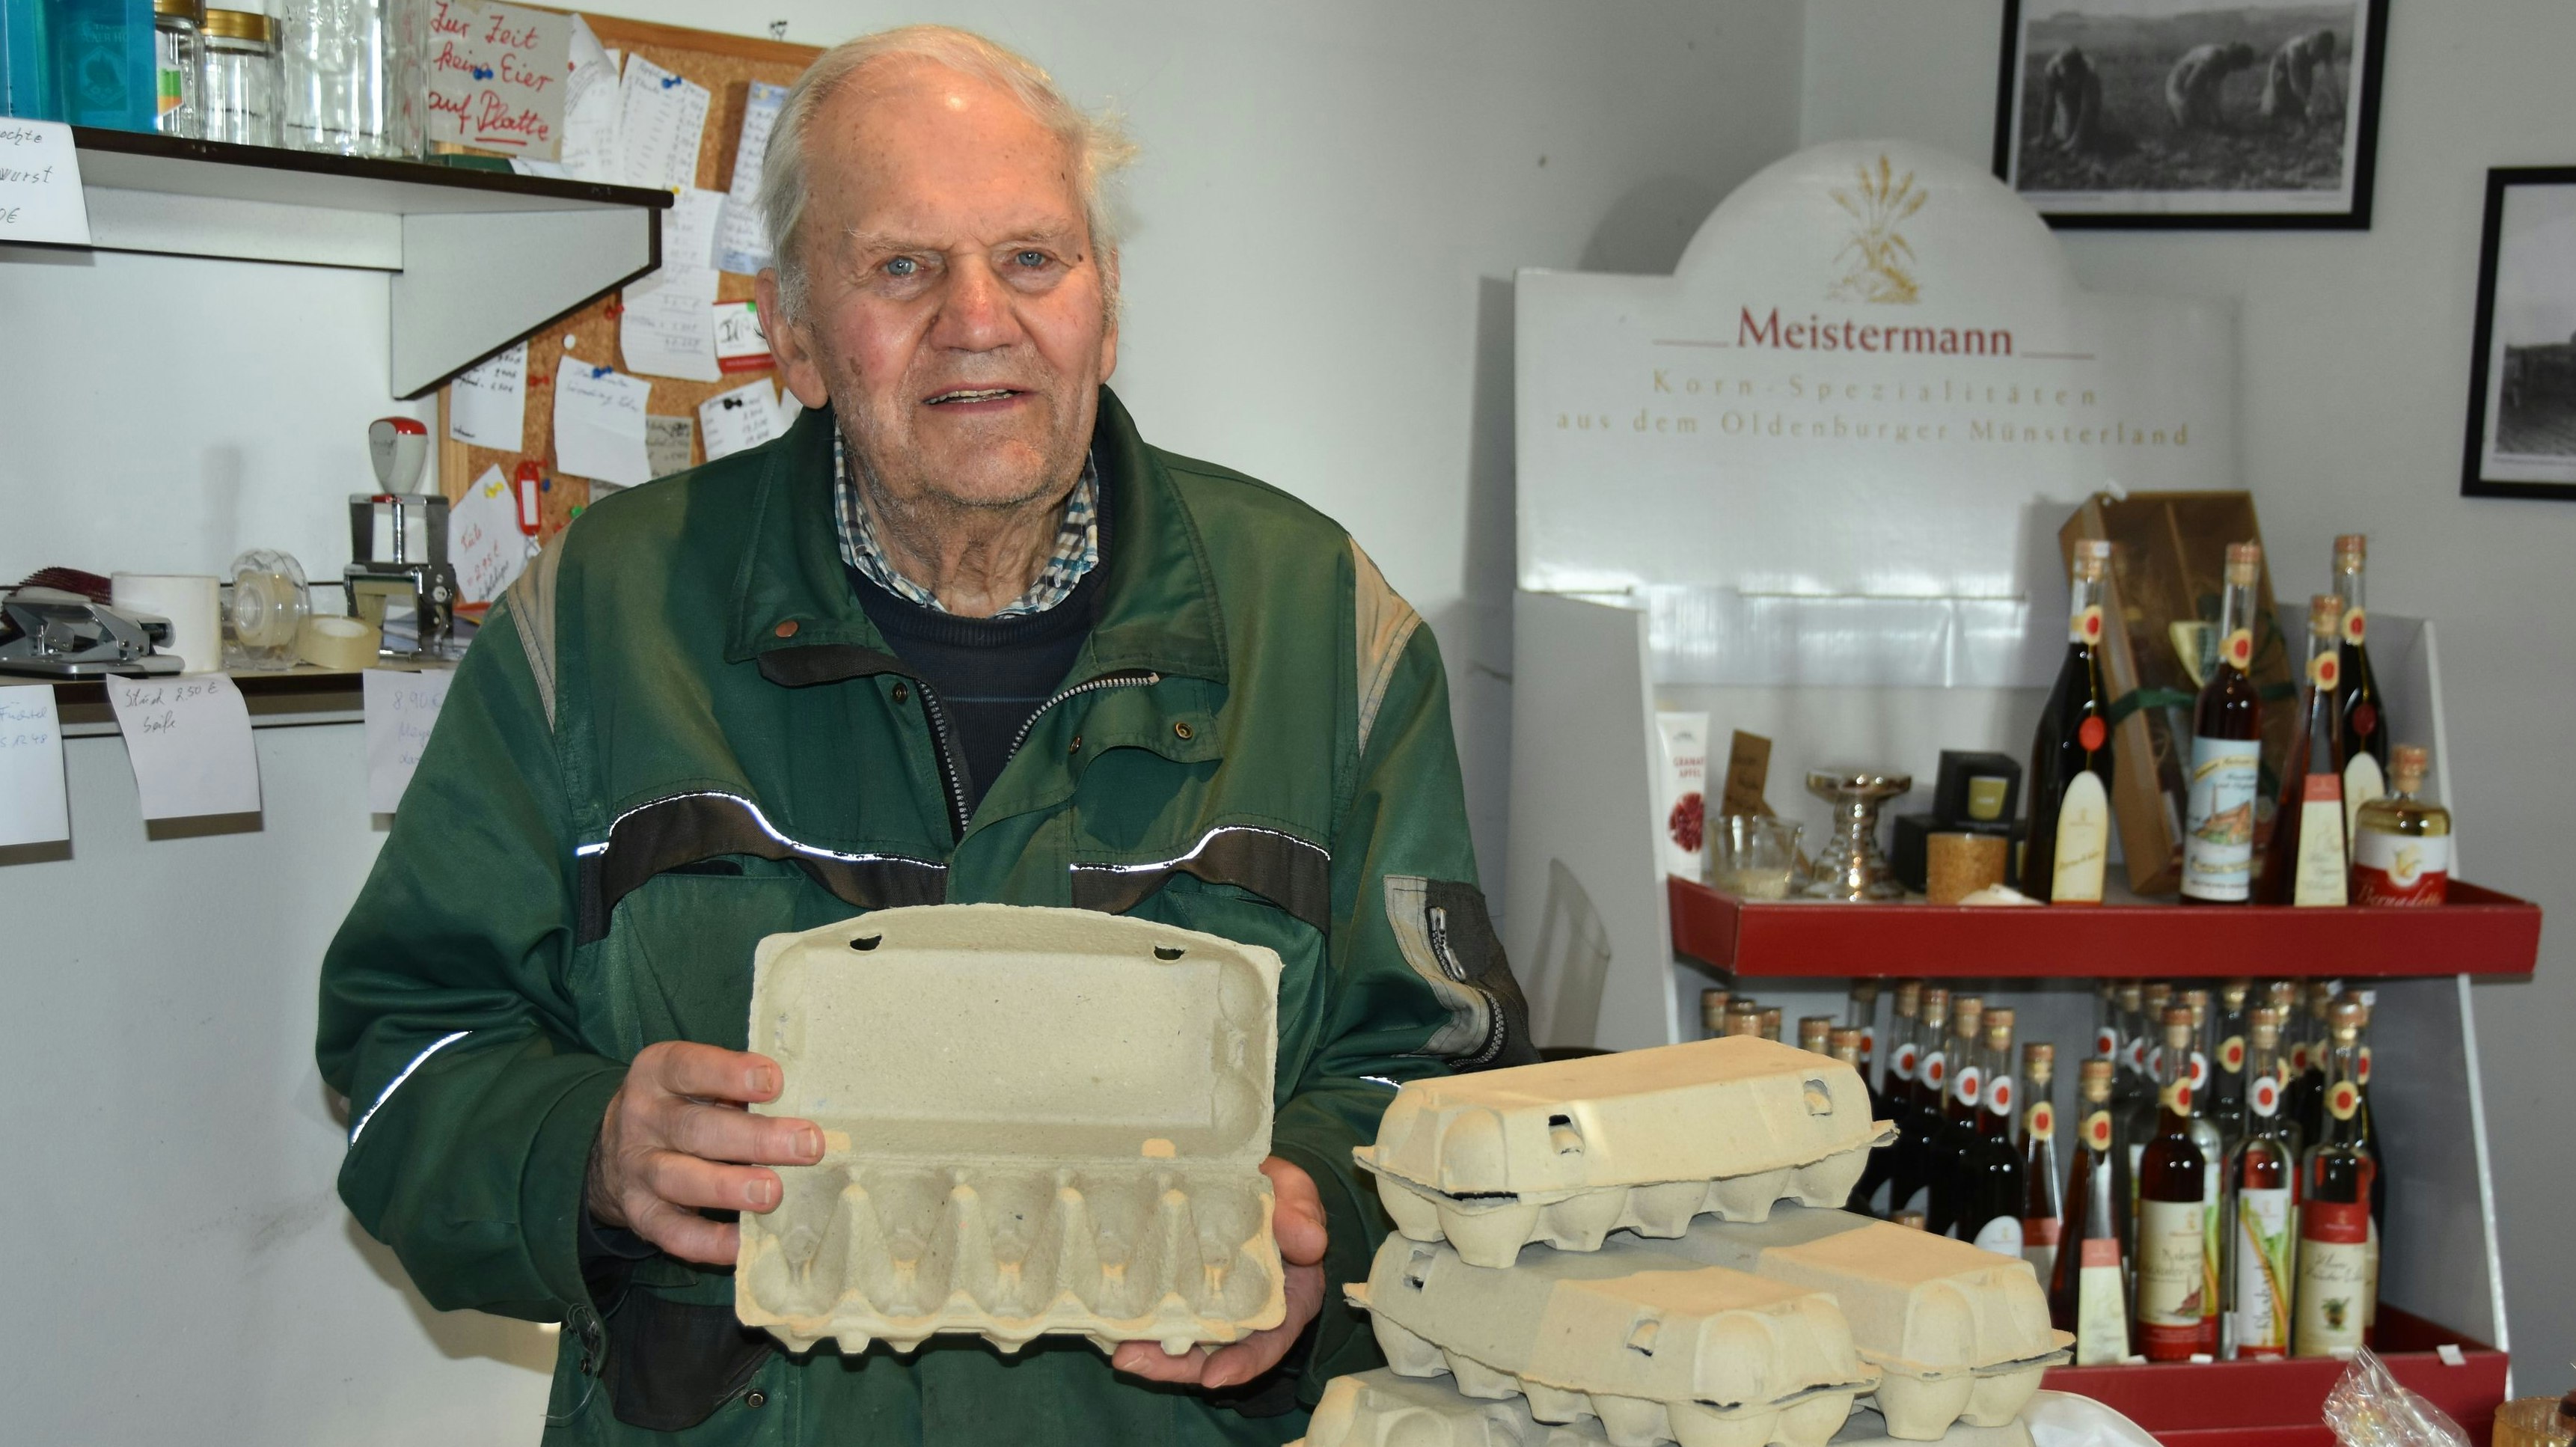 Bis zum 16. Februar keine Eier im Karton: Helmut Mählmann in seinem Hofladen in Vechta. Foto: Tzimurtas